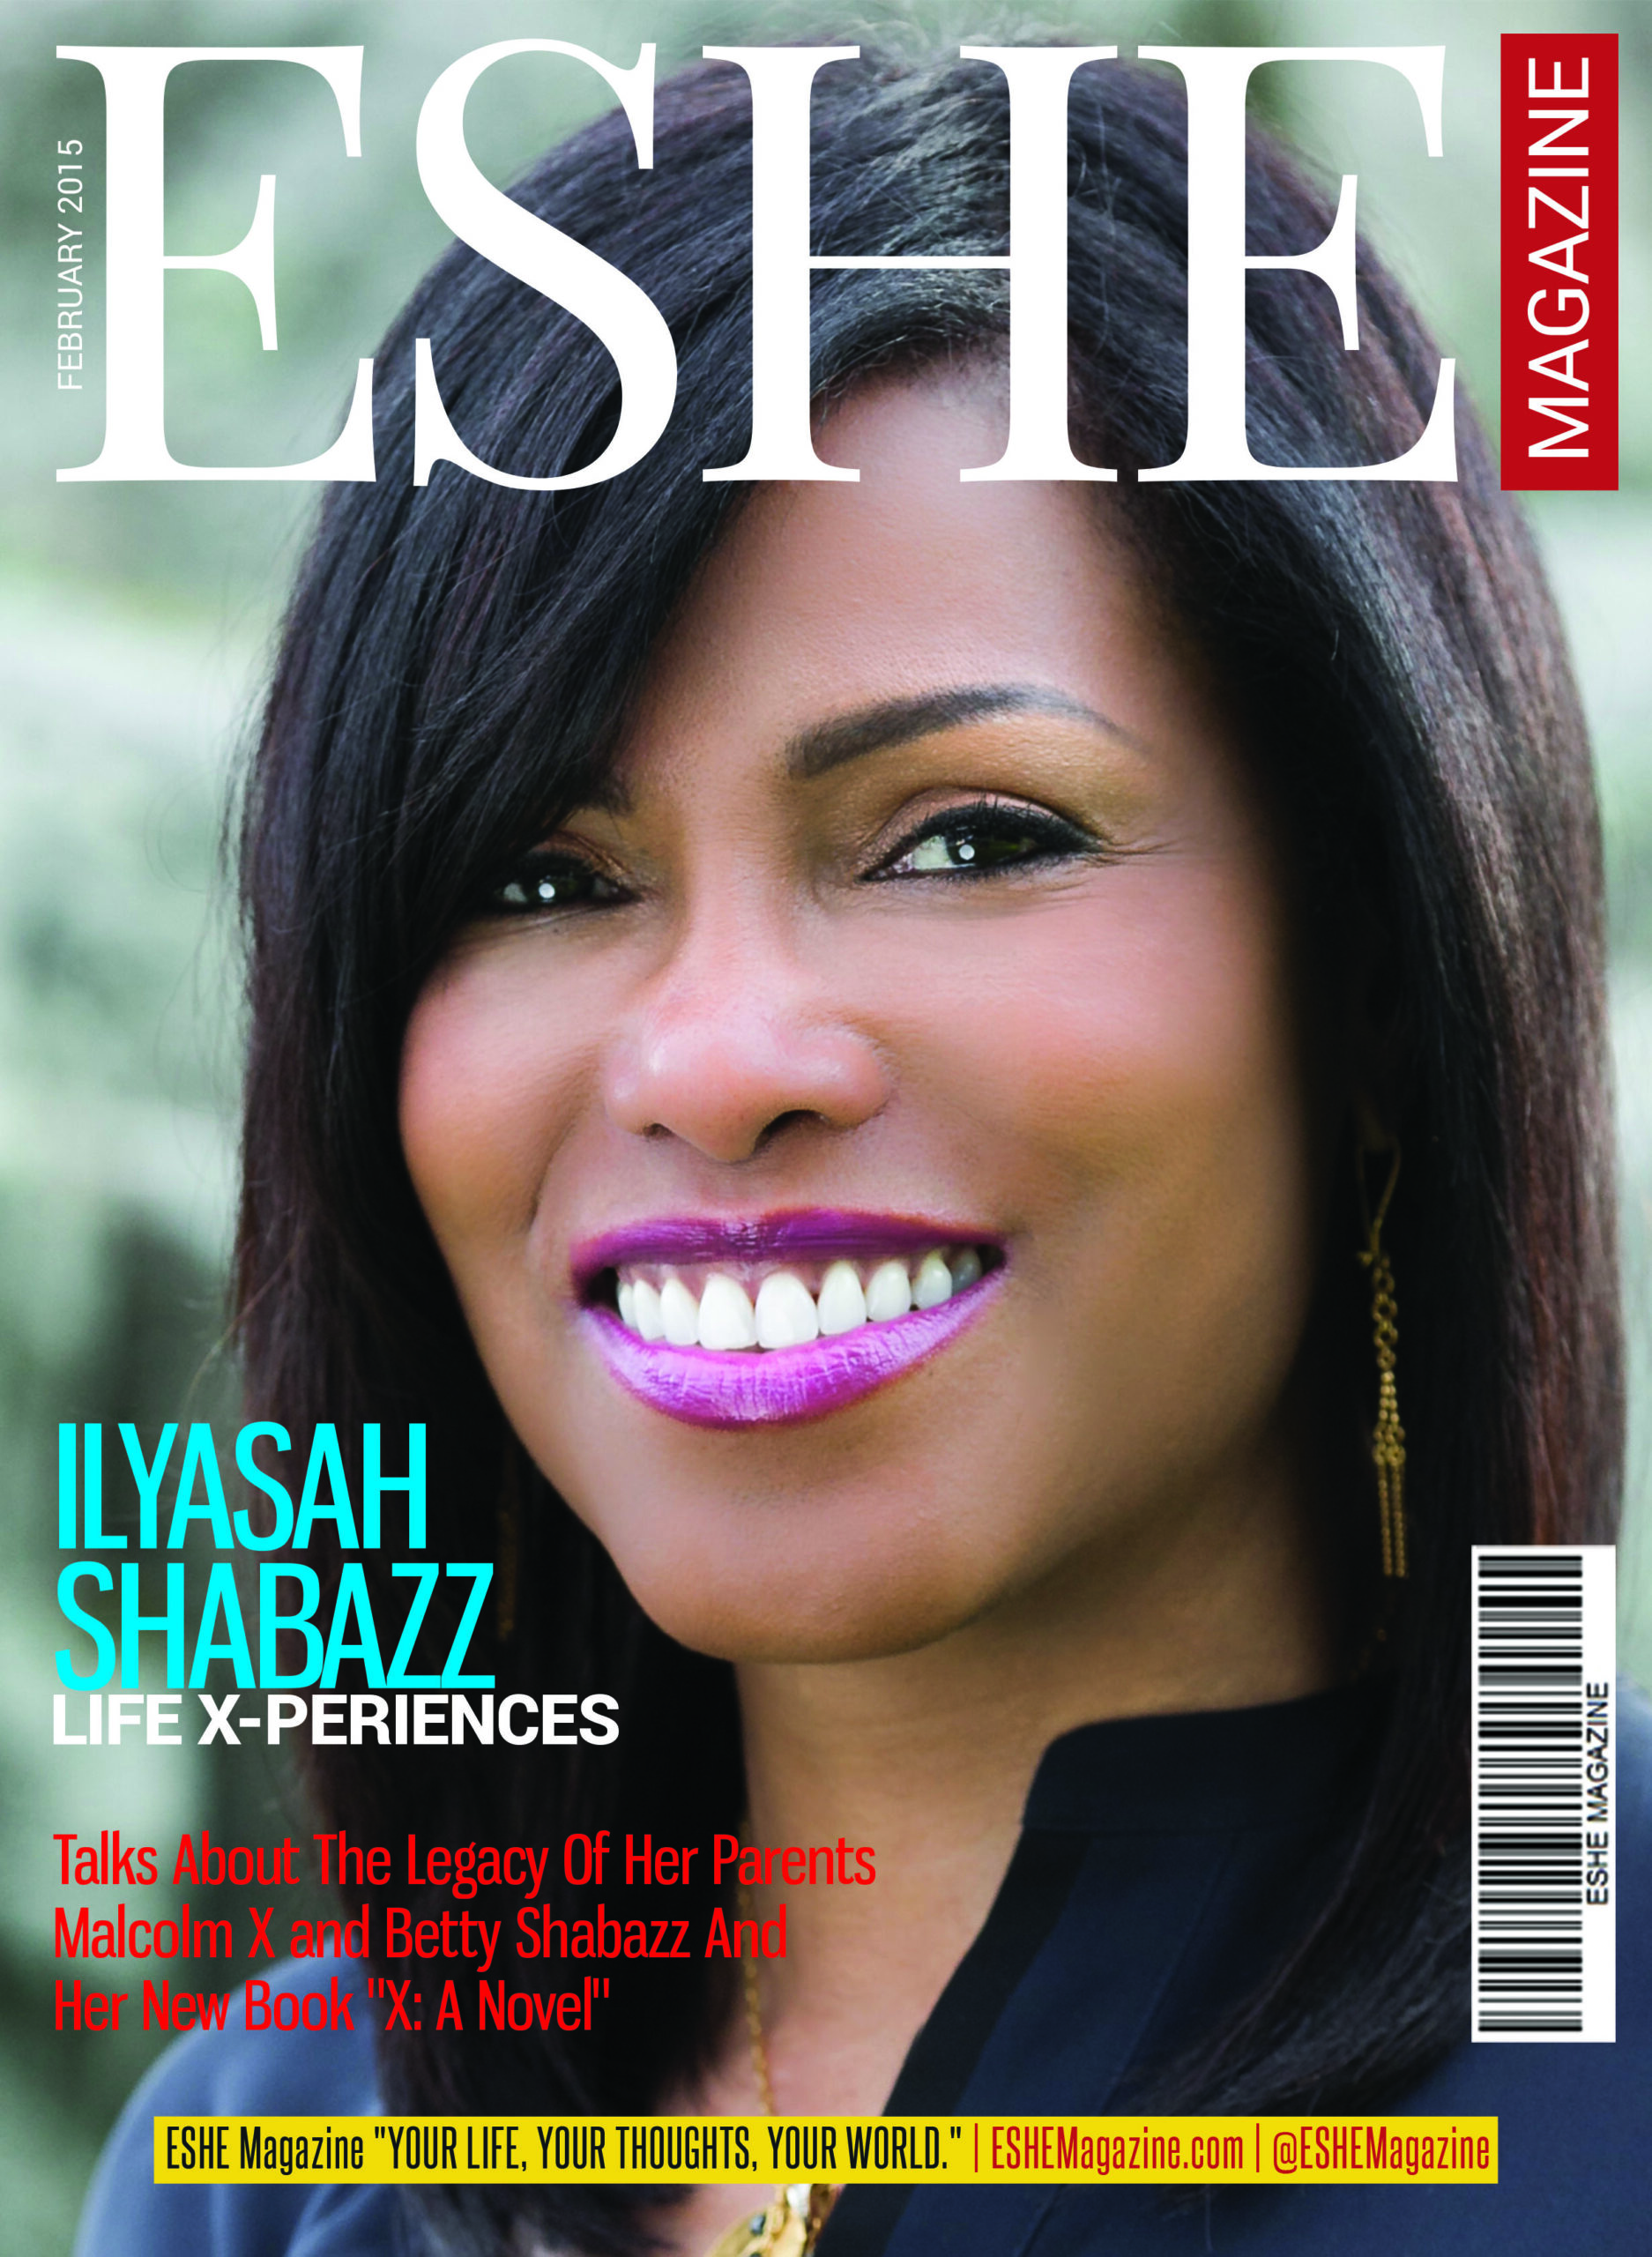 Ilyasah Shabazz: Life X-Periences